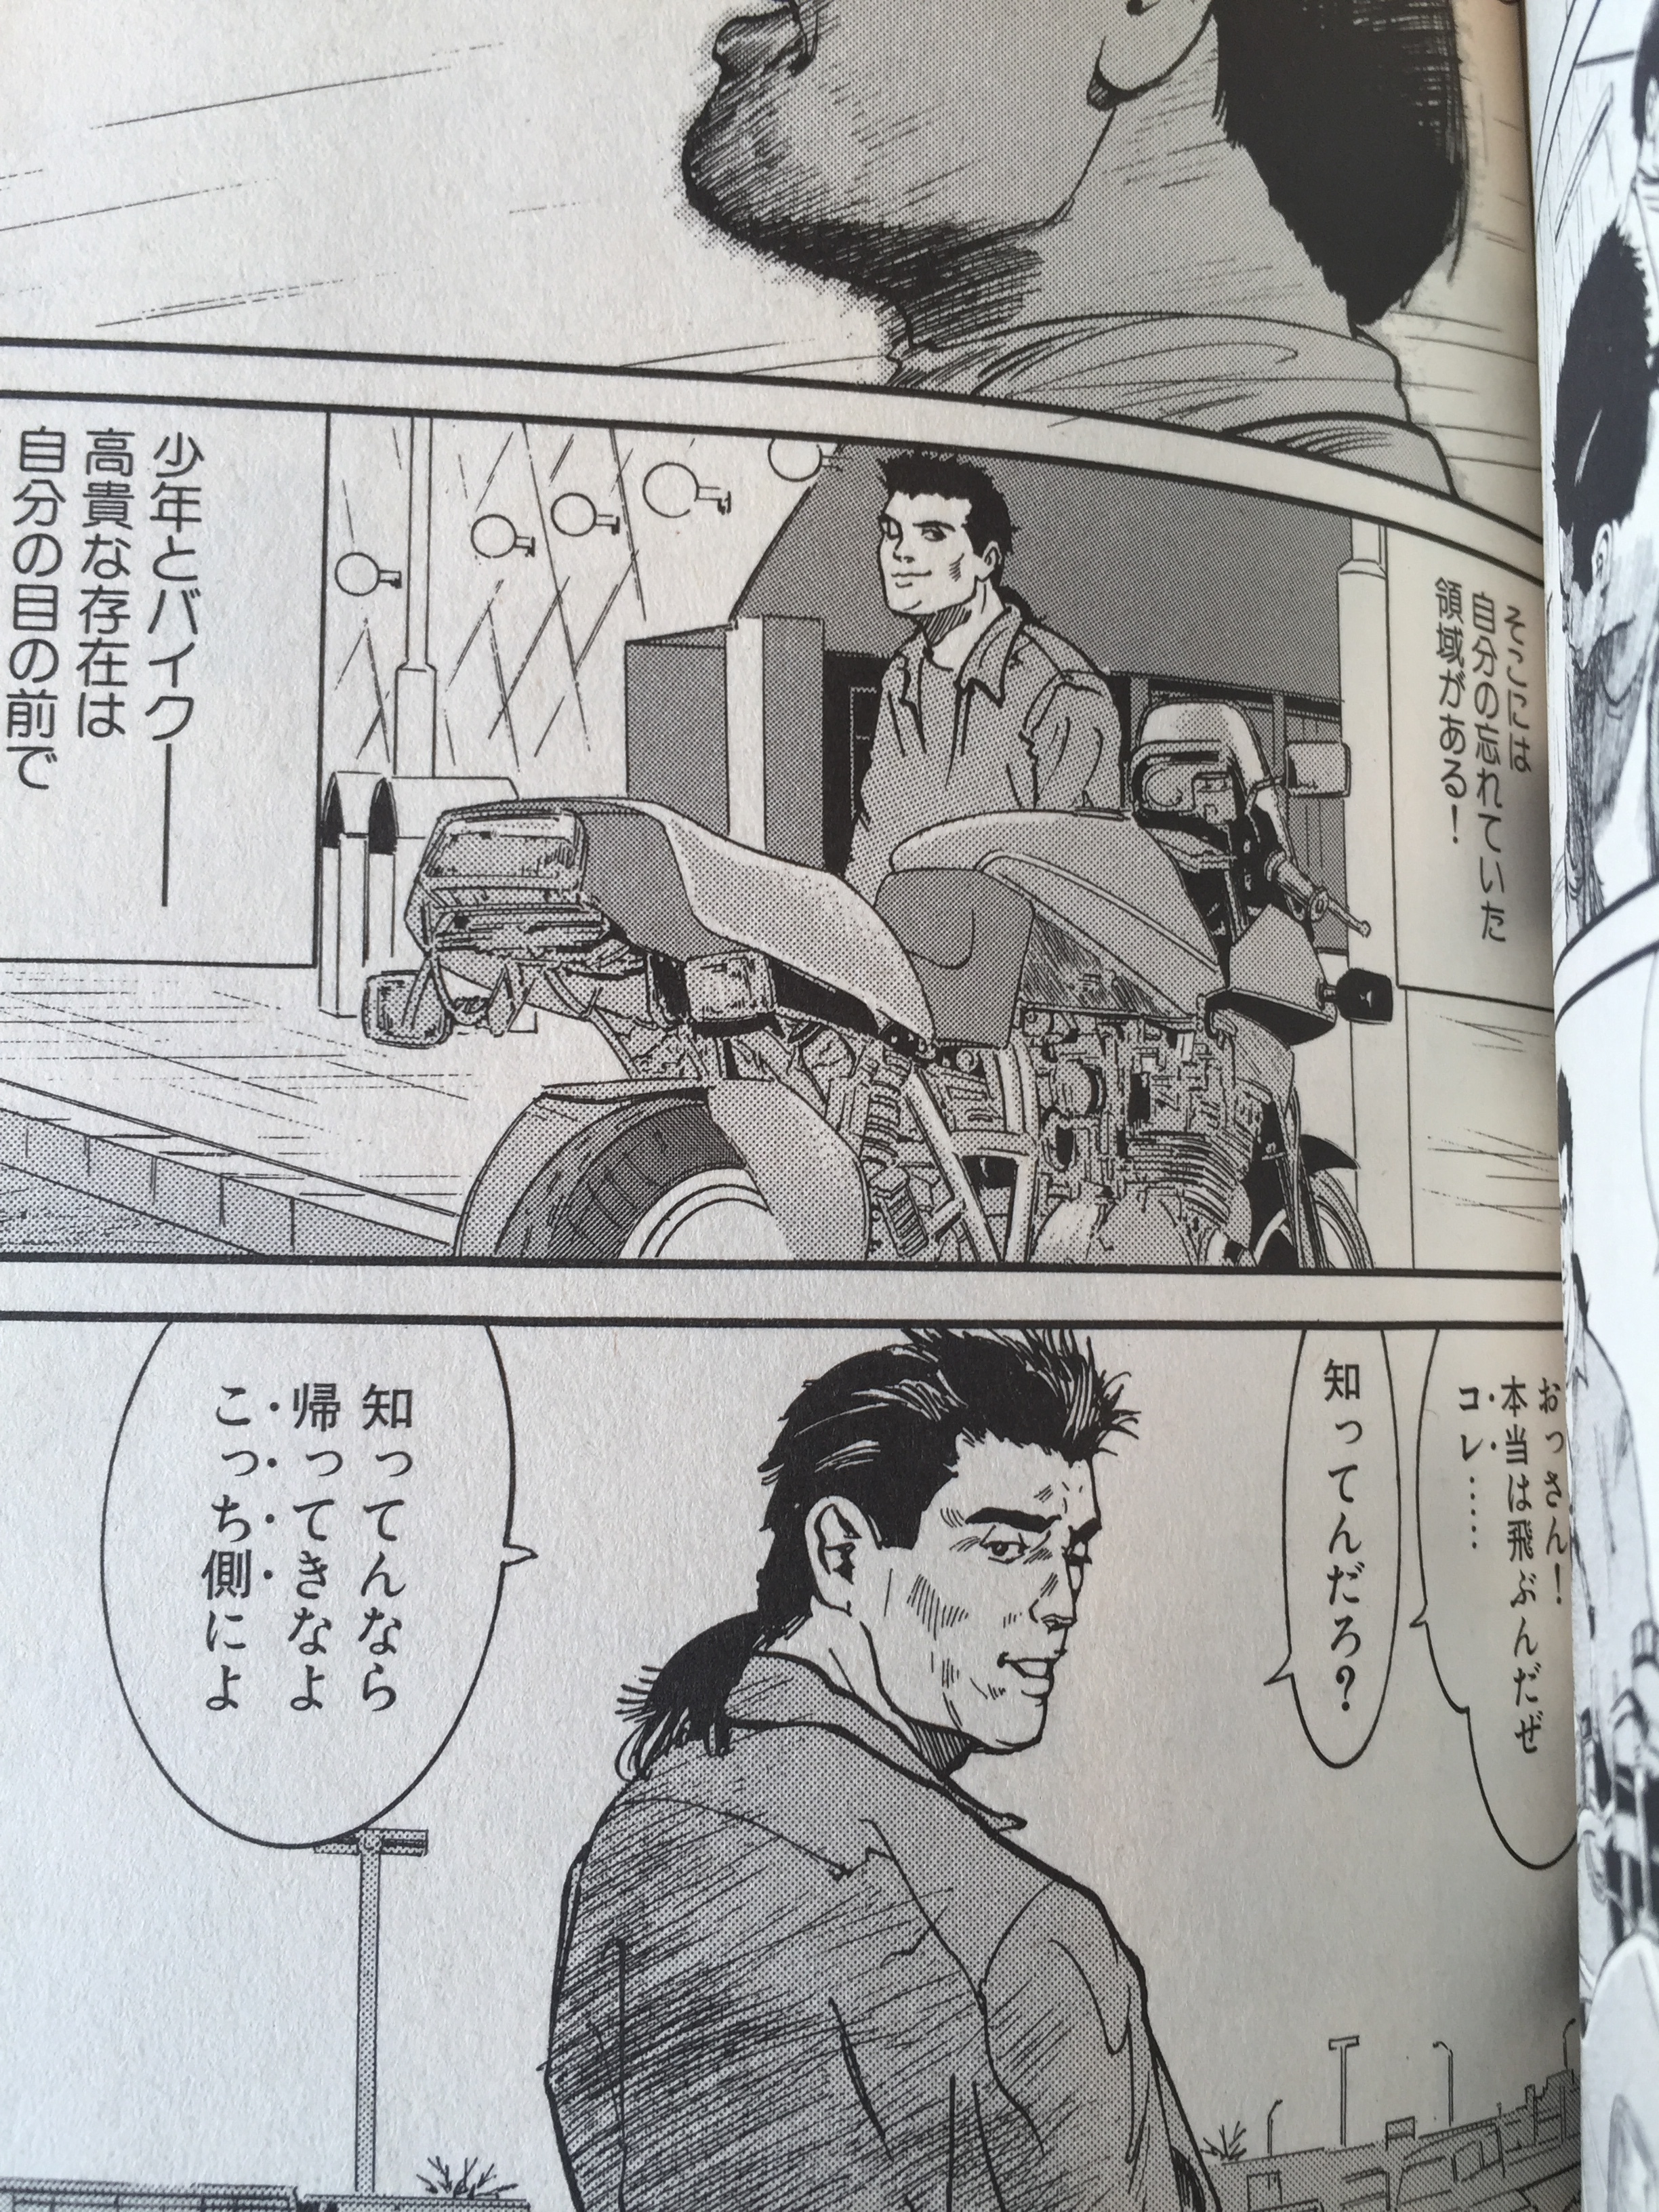 東本昌平のバイク漫画 キリン がアツい そのあらすじや魅力を解説 暮らし の